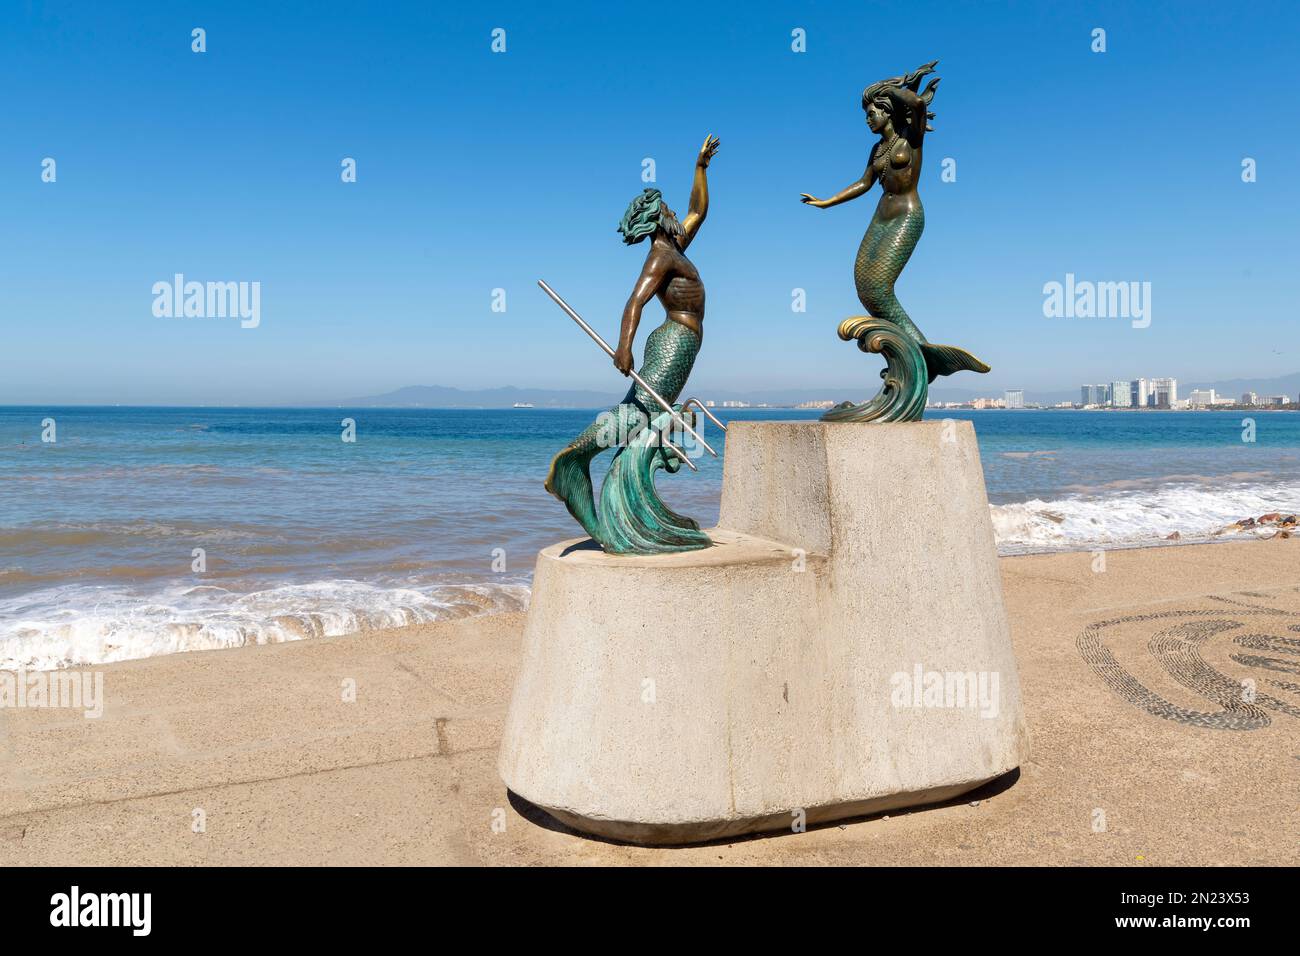 Une statue du dieu Triton, fils de Poséidon, et Néréide, une nymphe marine le long de la promenade Malecon Boardwalk et de la plage à Puerto Vallarta, Mexique. Banque D'Images